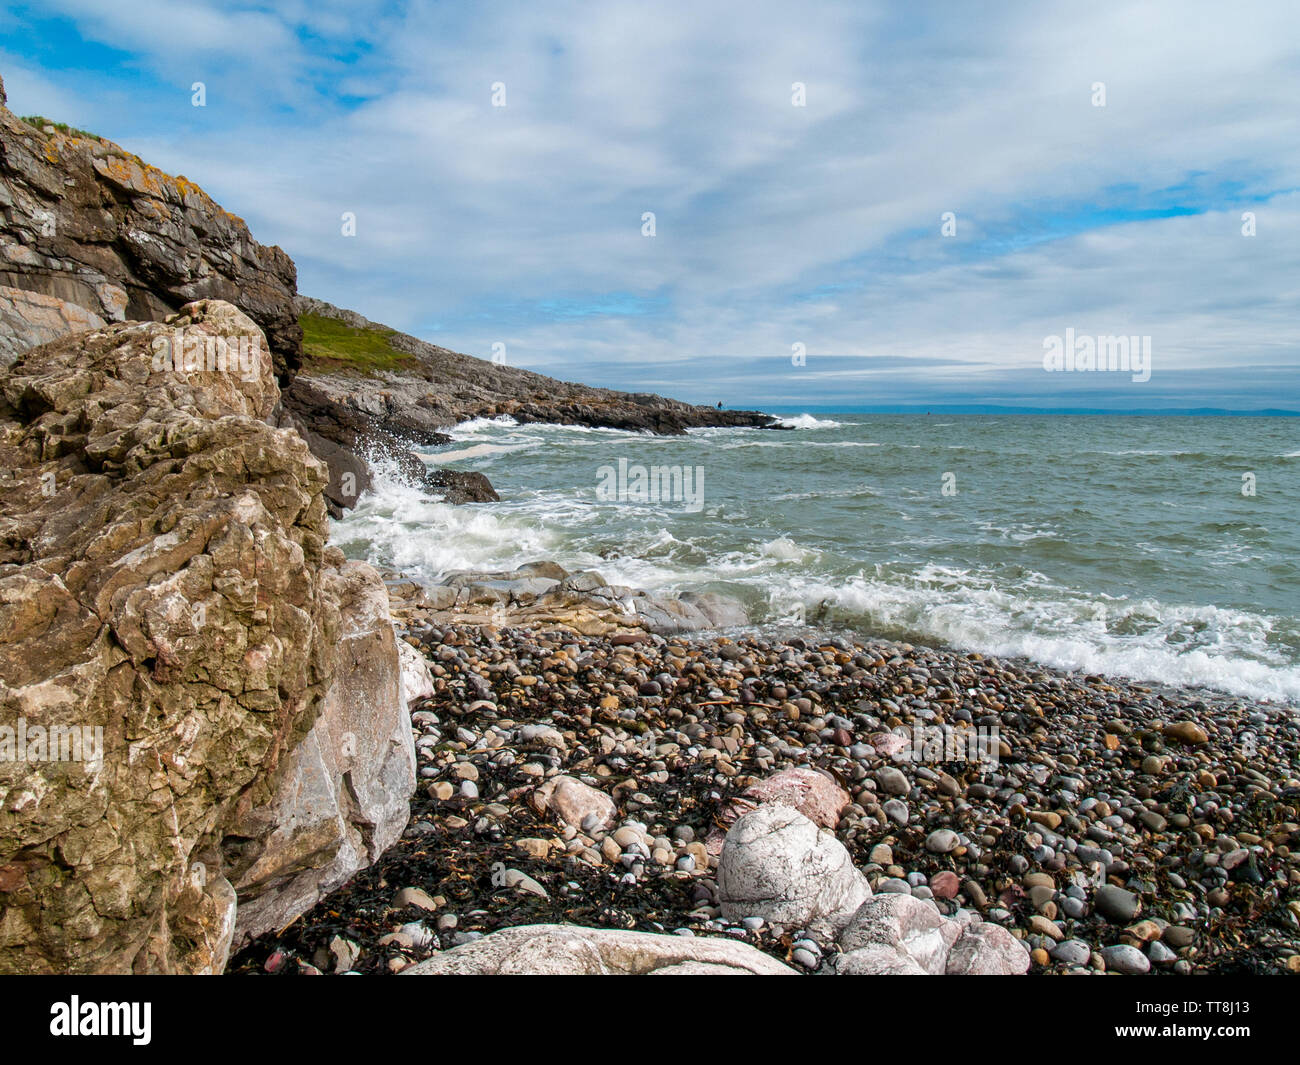 Face à la mer à Limeslade Bay, un pêcheur peut être vu la pêche sur les rochers au loin. Gower, Swansea, Pays de Galles, Royaume-Uni. Banque D'Images